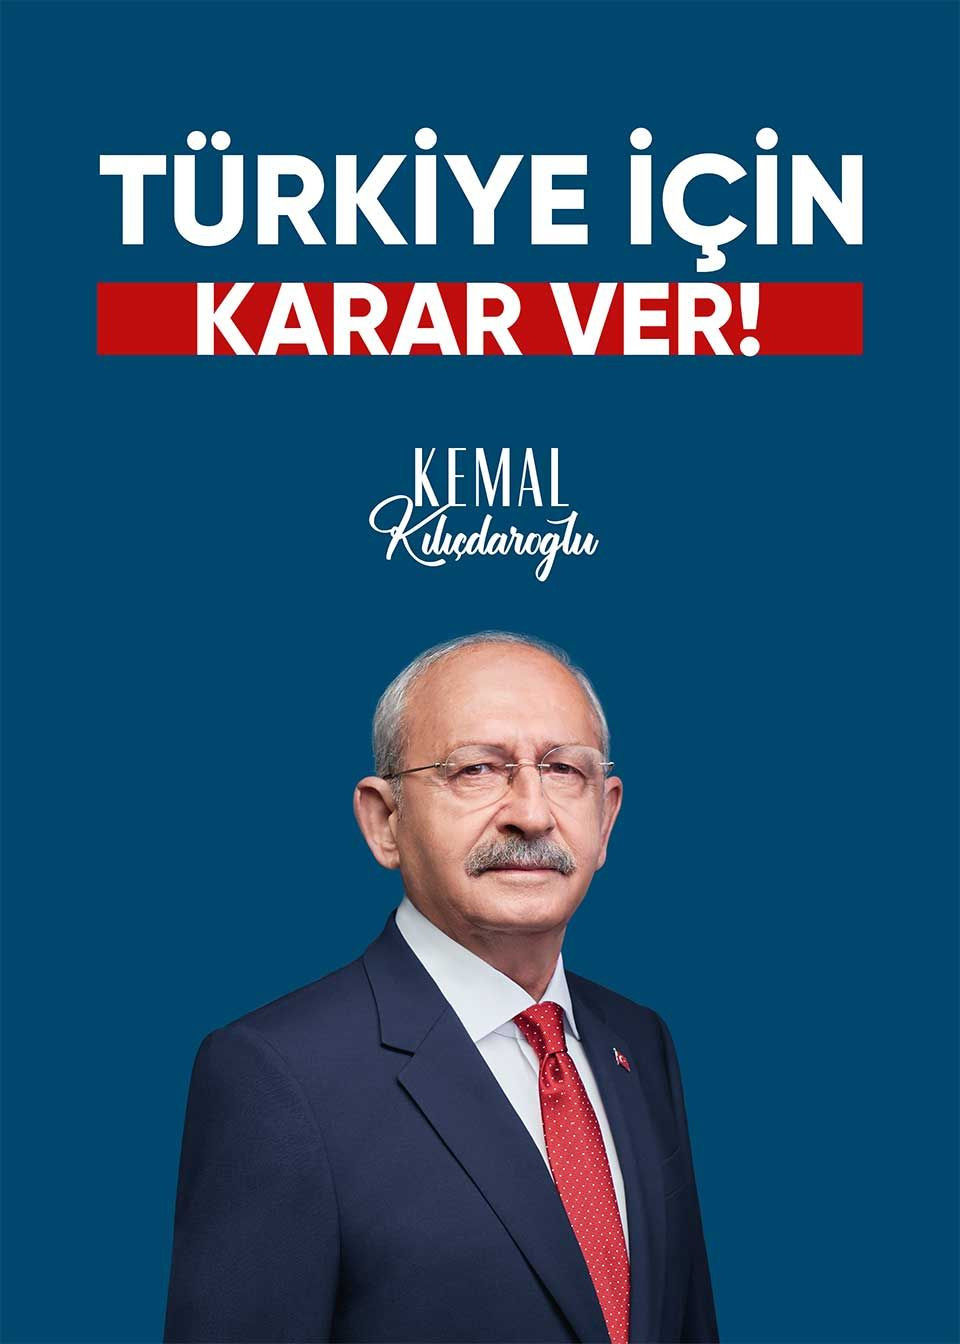 Kılıçdaroğlu'nun seçim sloganı 'Karar ver': 9 başlıkta afiş hazırlandı - Sayfa 1